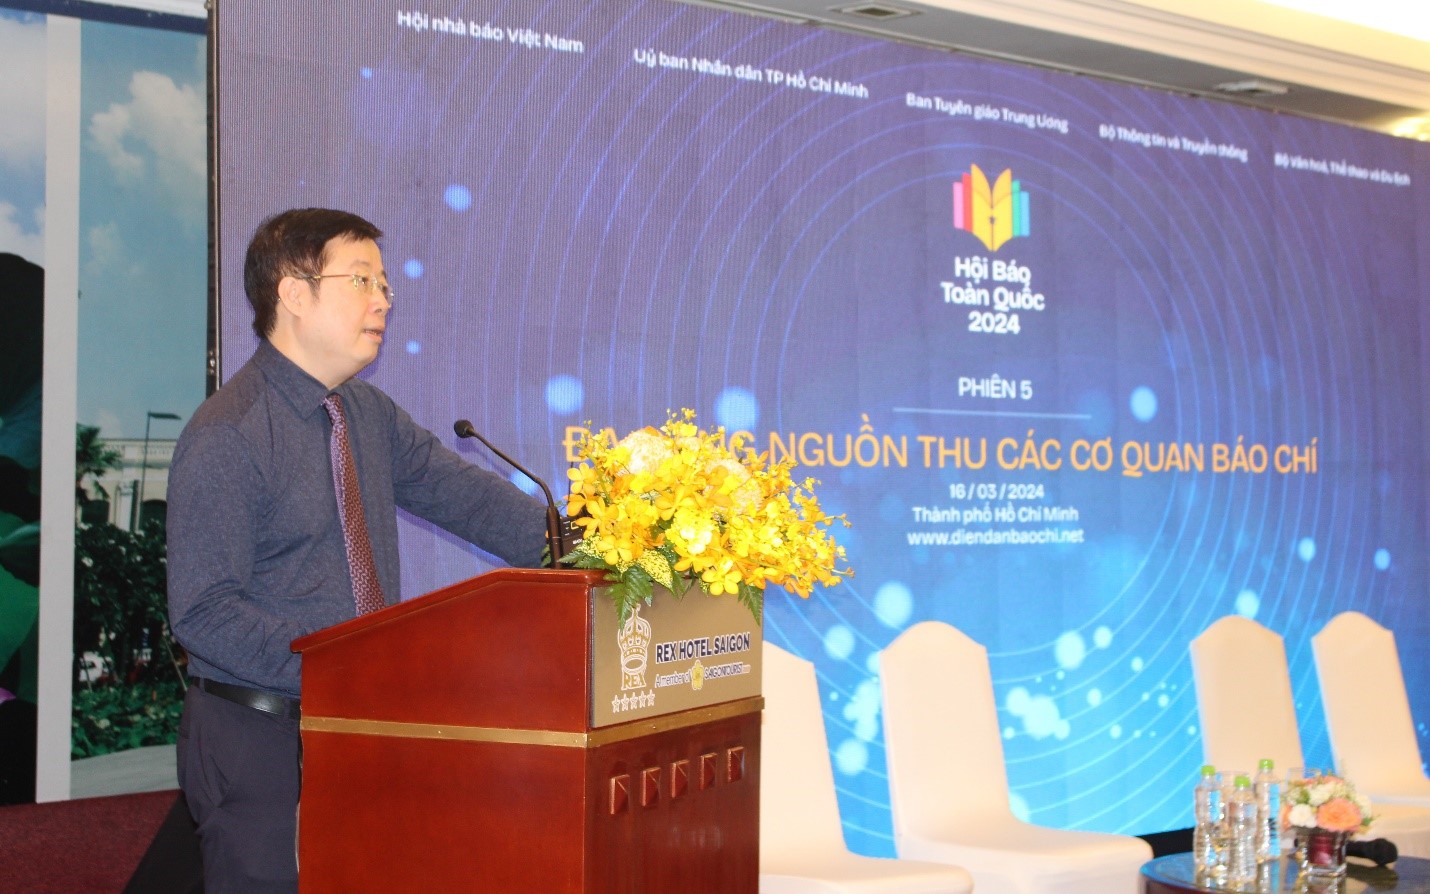 Thứ trưởng Bộ Thông tin & Truyền thông Nguyễn Thanh Lâm cho biết: Nhà nước có vai trò quan trọng bên cạnh việc quản lý xã hội, nhà nước cũng thể trở thành khách hàng lớn với báo chí đặt hàng, đặc biệt là truyền thông chính sách.